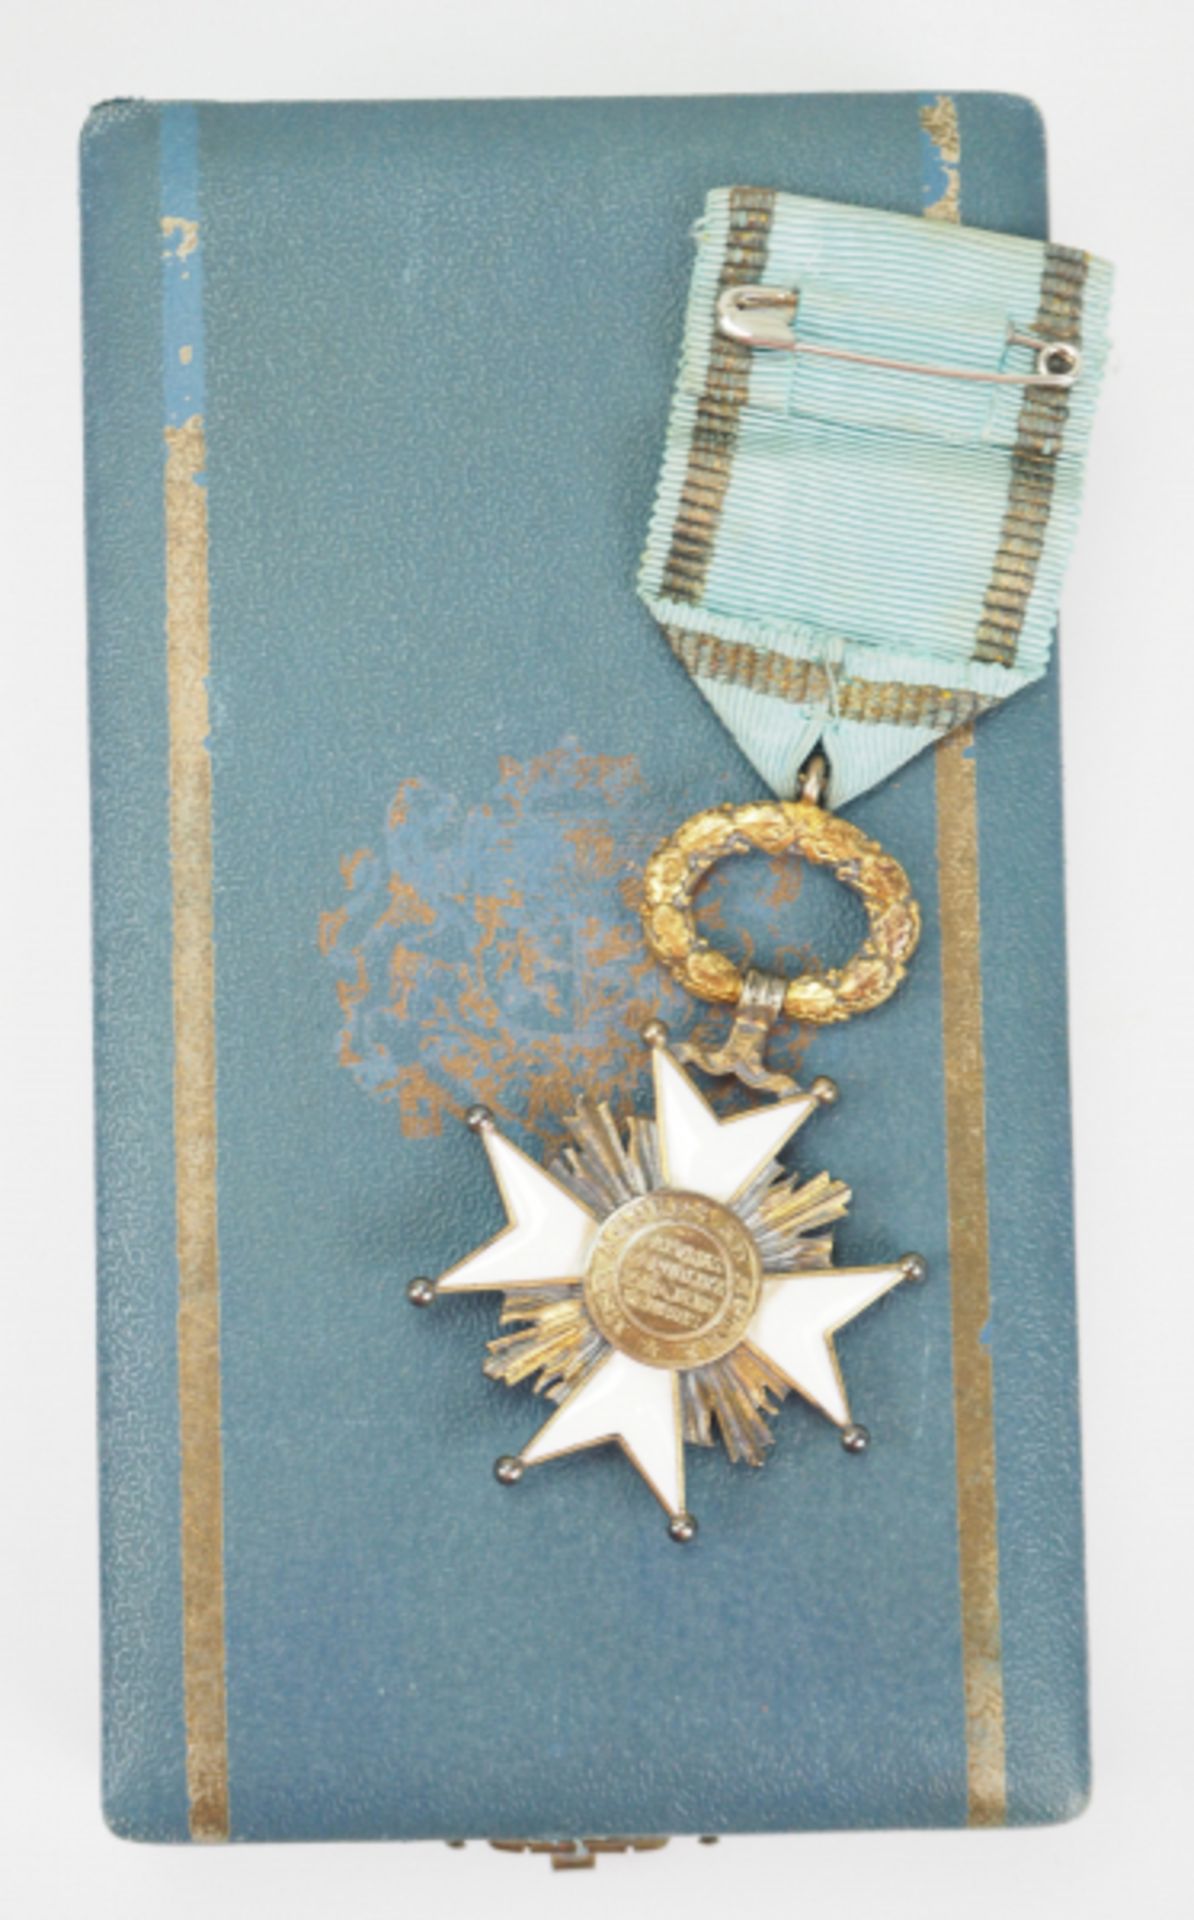 Lettland: Orden der drei Sterne, 1. Modell (1924-1940), Ritterkreuz, im Etui. - Bild 2 aus 2